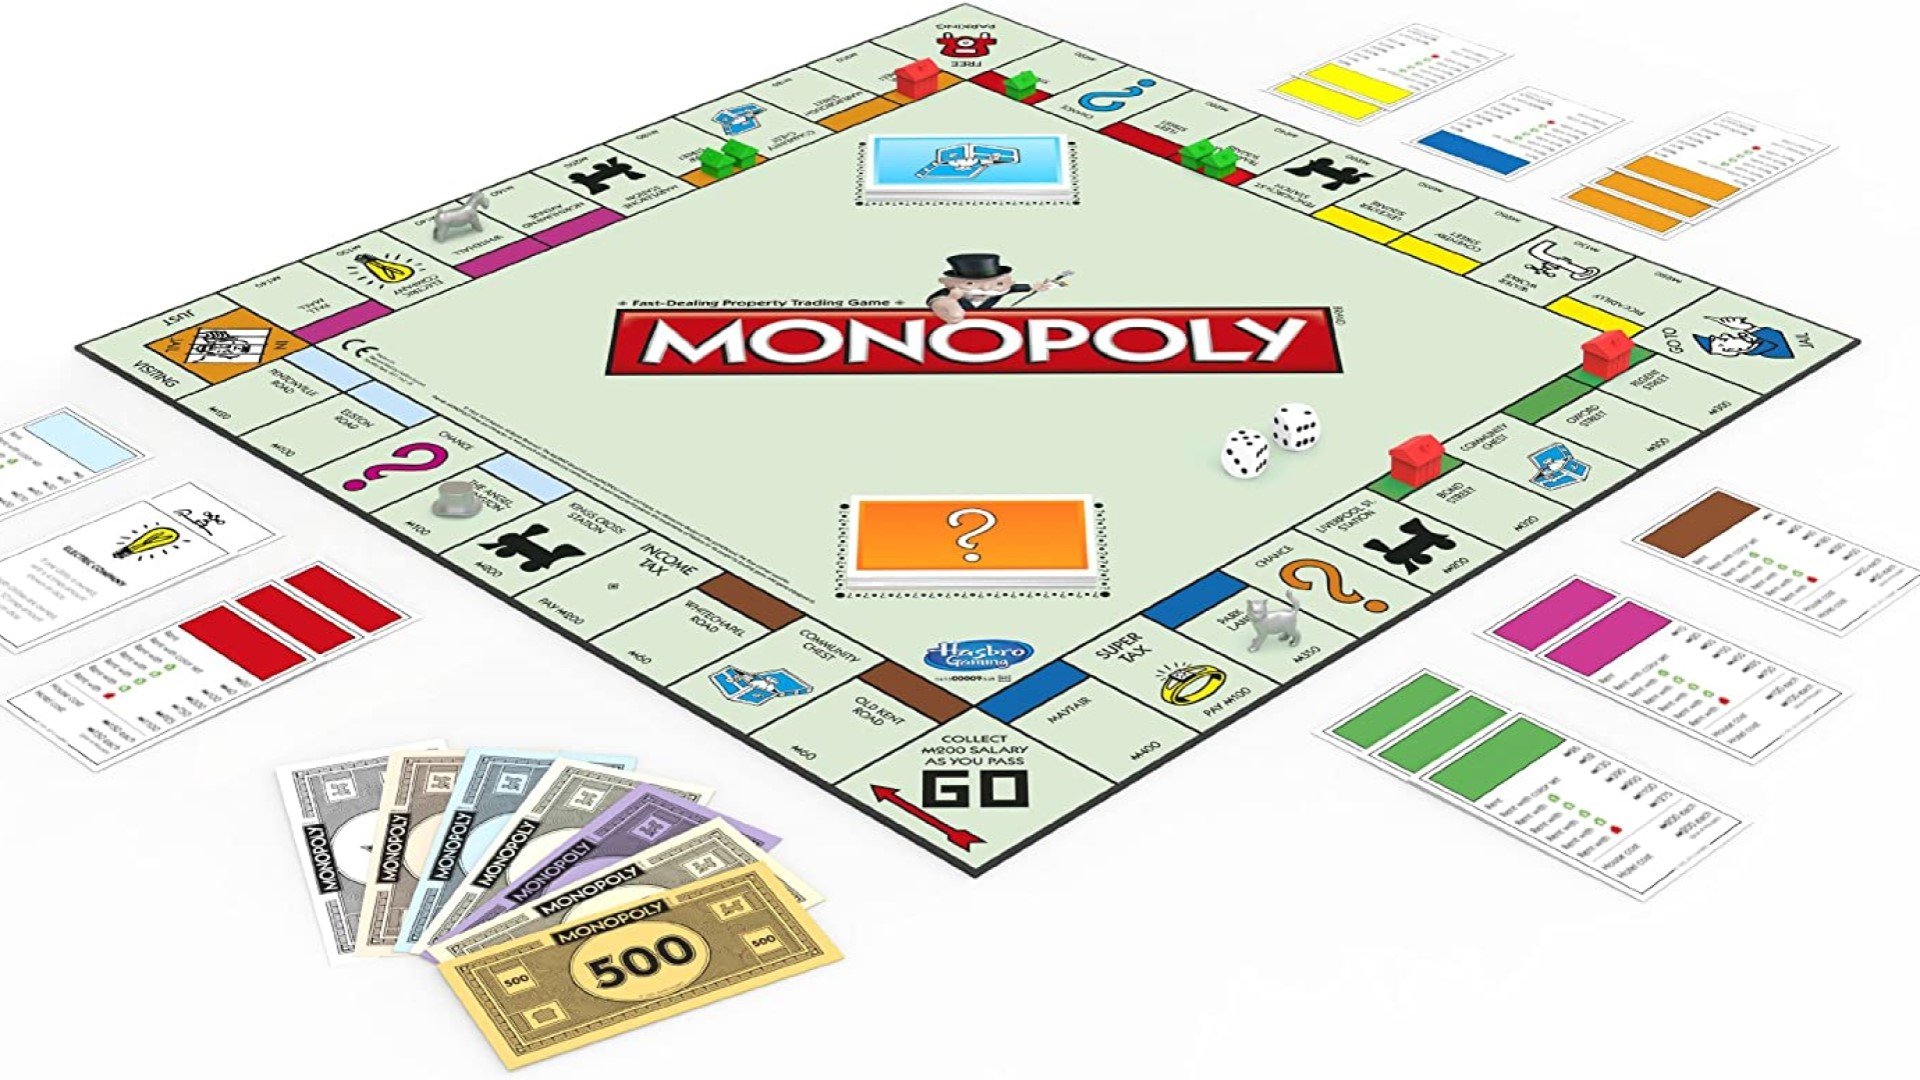 Monopoly - a monopoly board